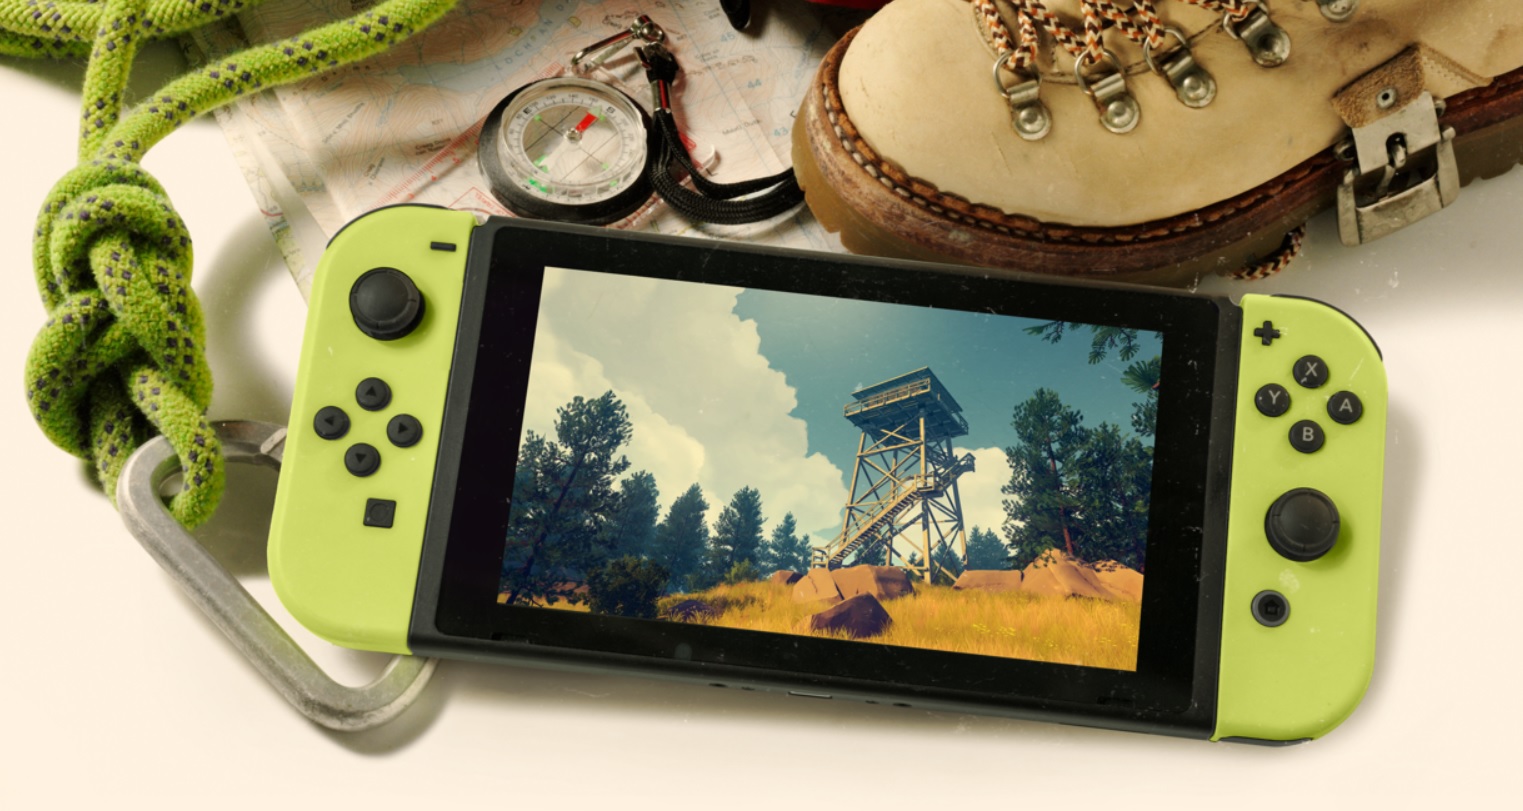  Reggie Fils-Aimé balaie les rumeurs autour d’une nouvelle version de la Nintendo Switch